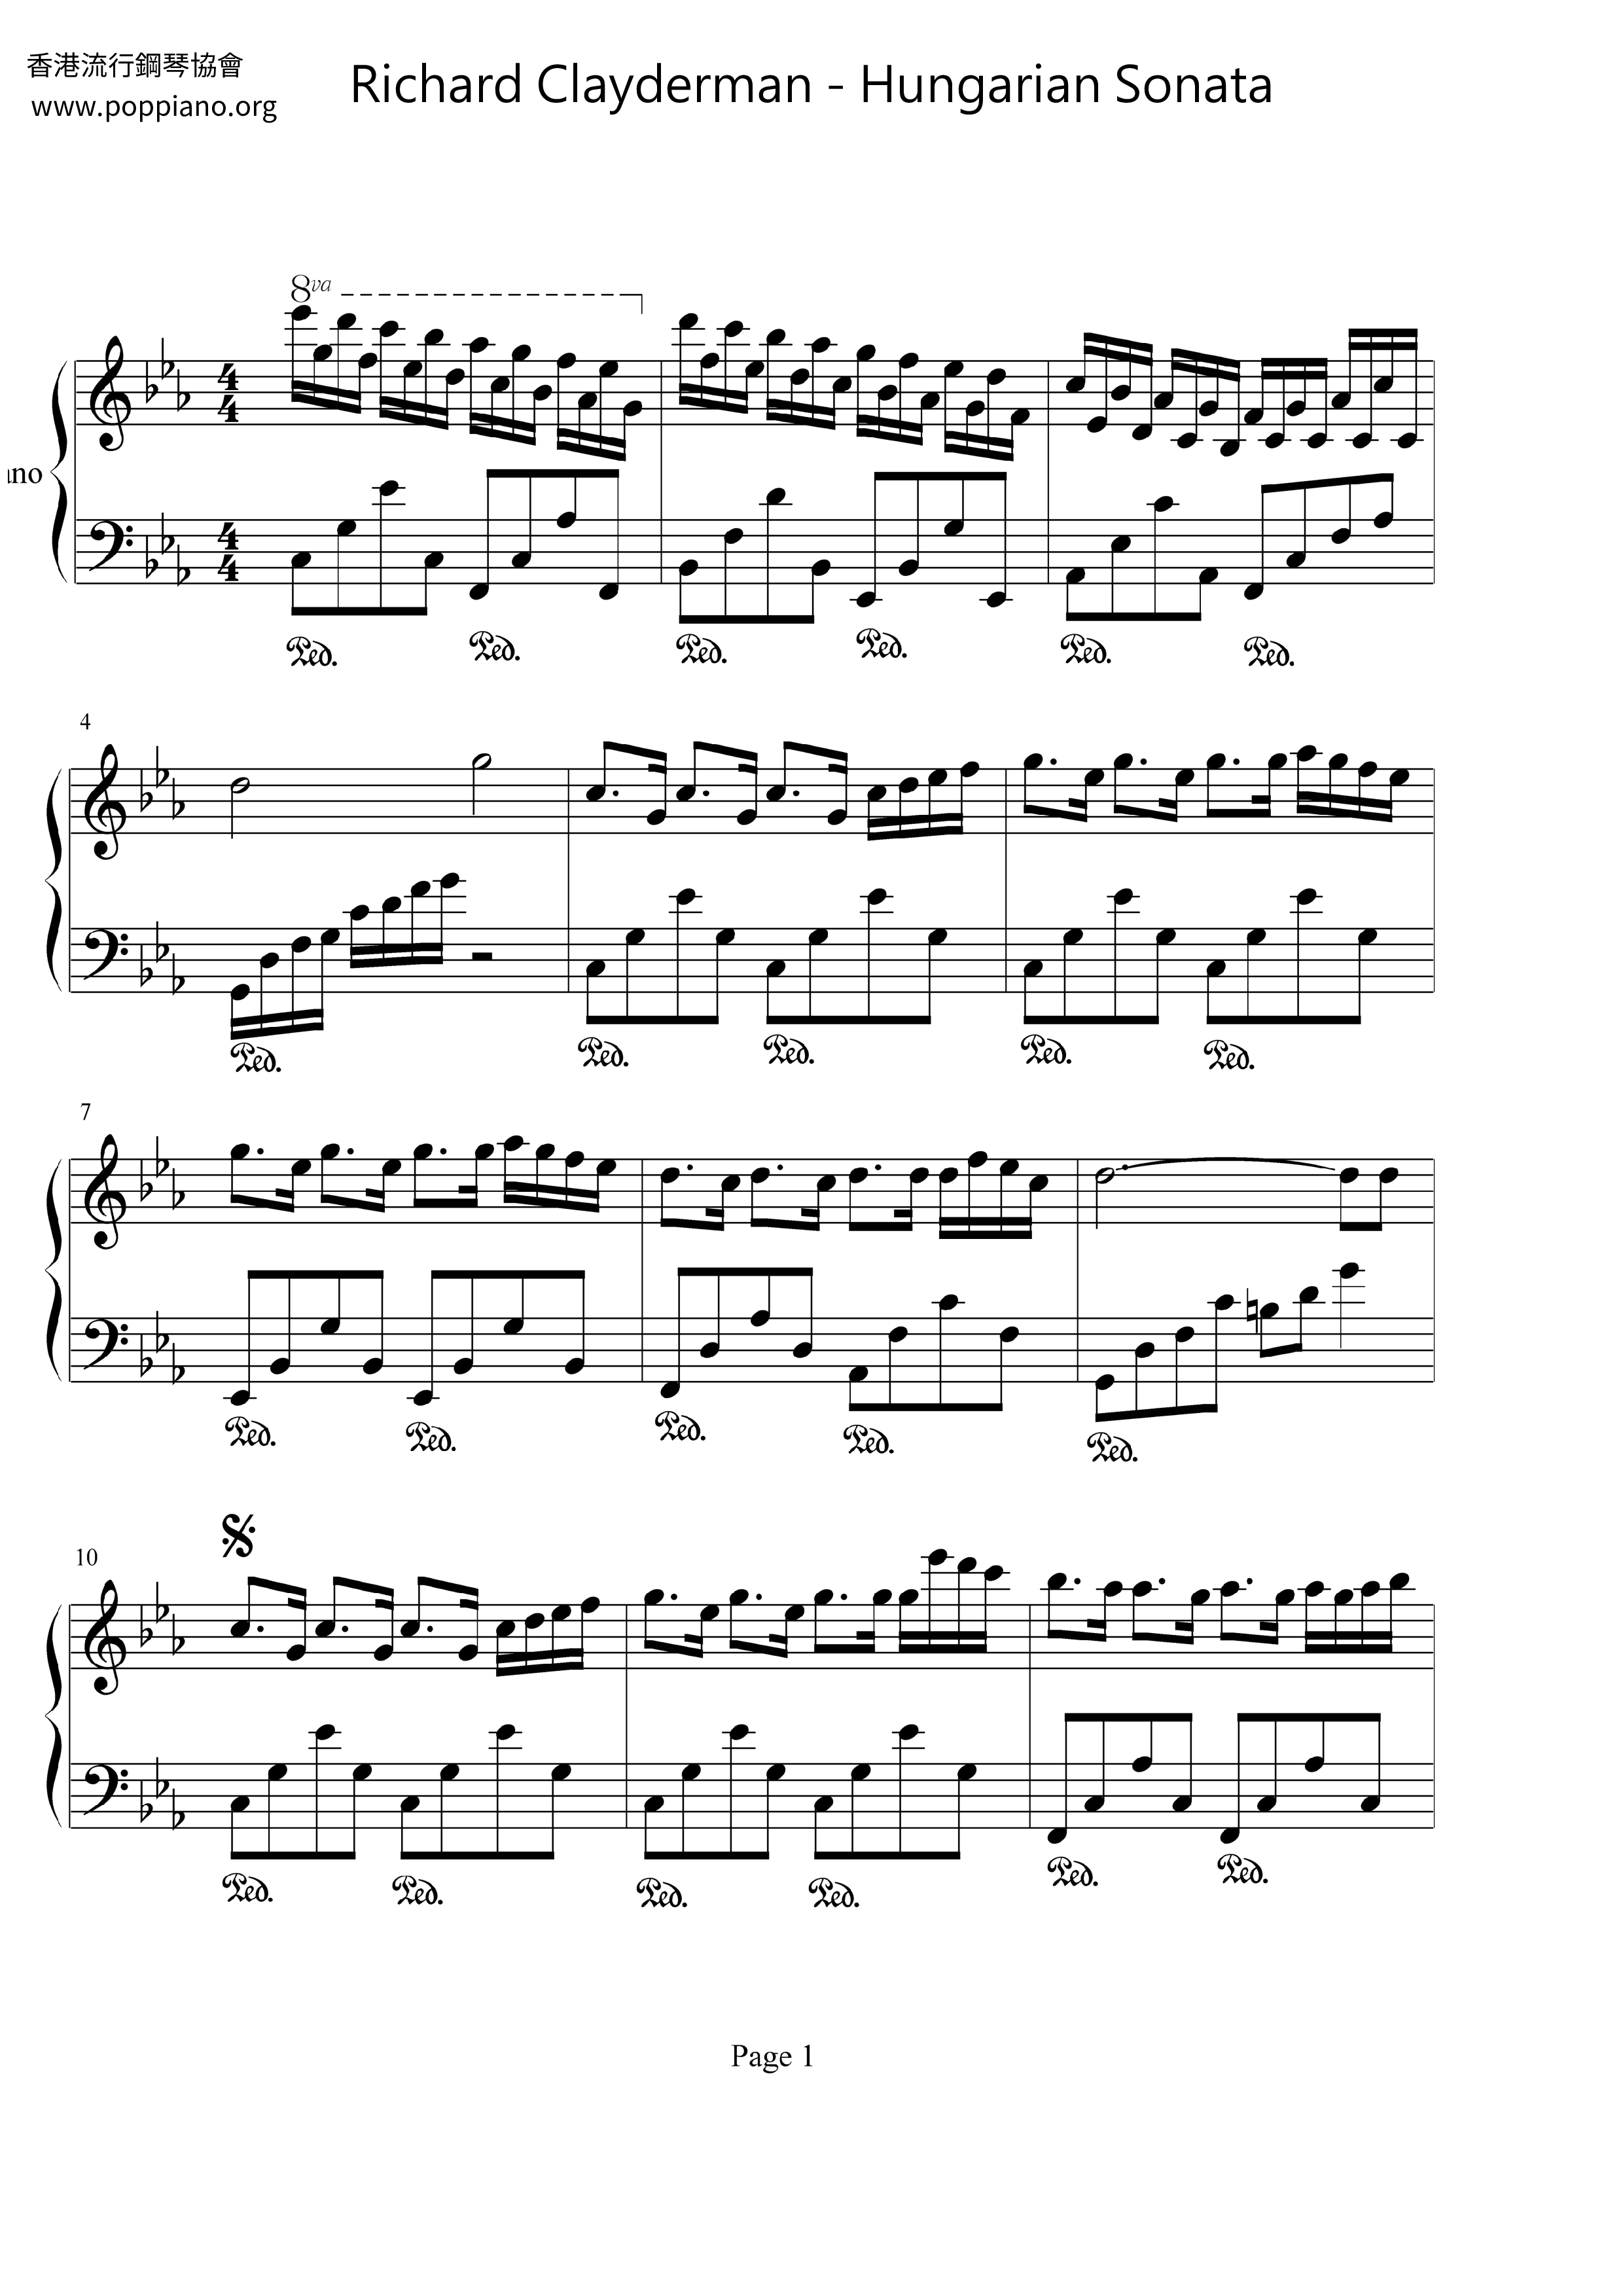 Hungarian Sonata Score